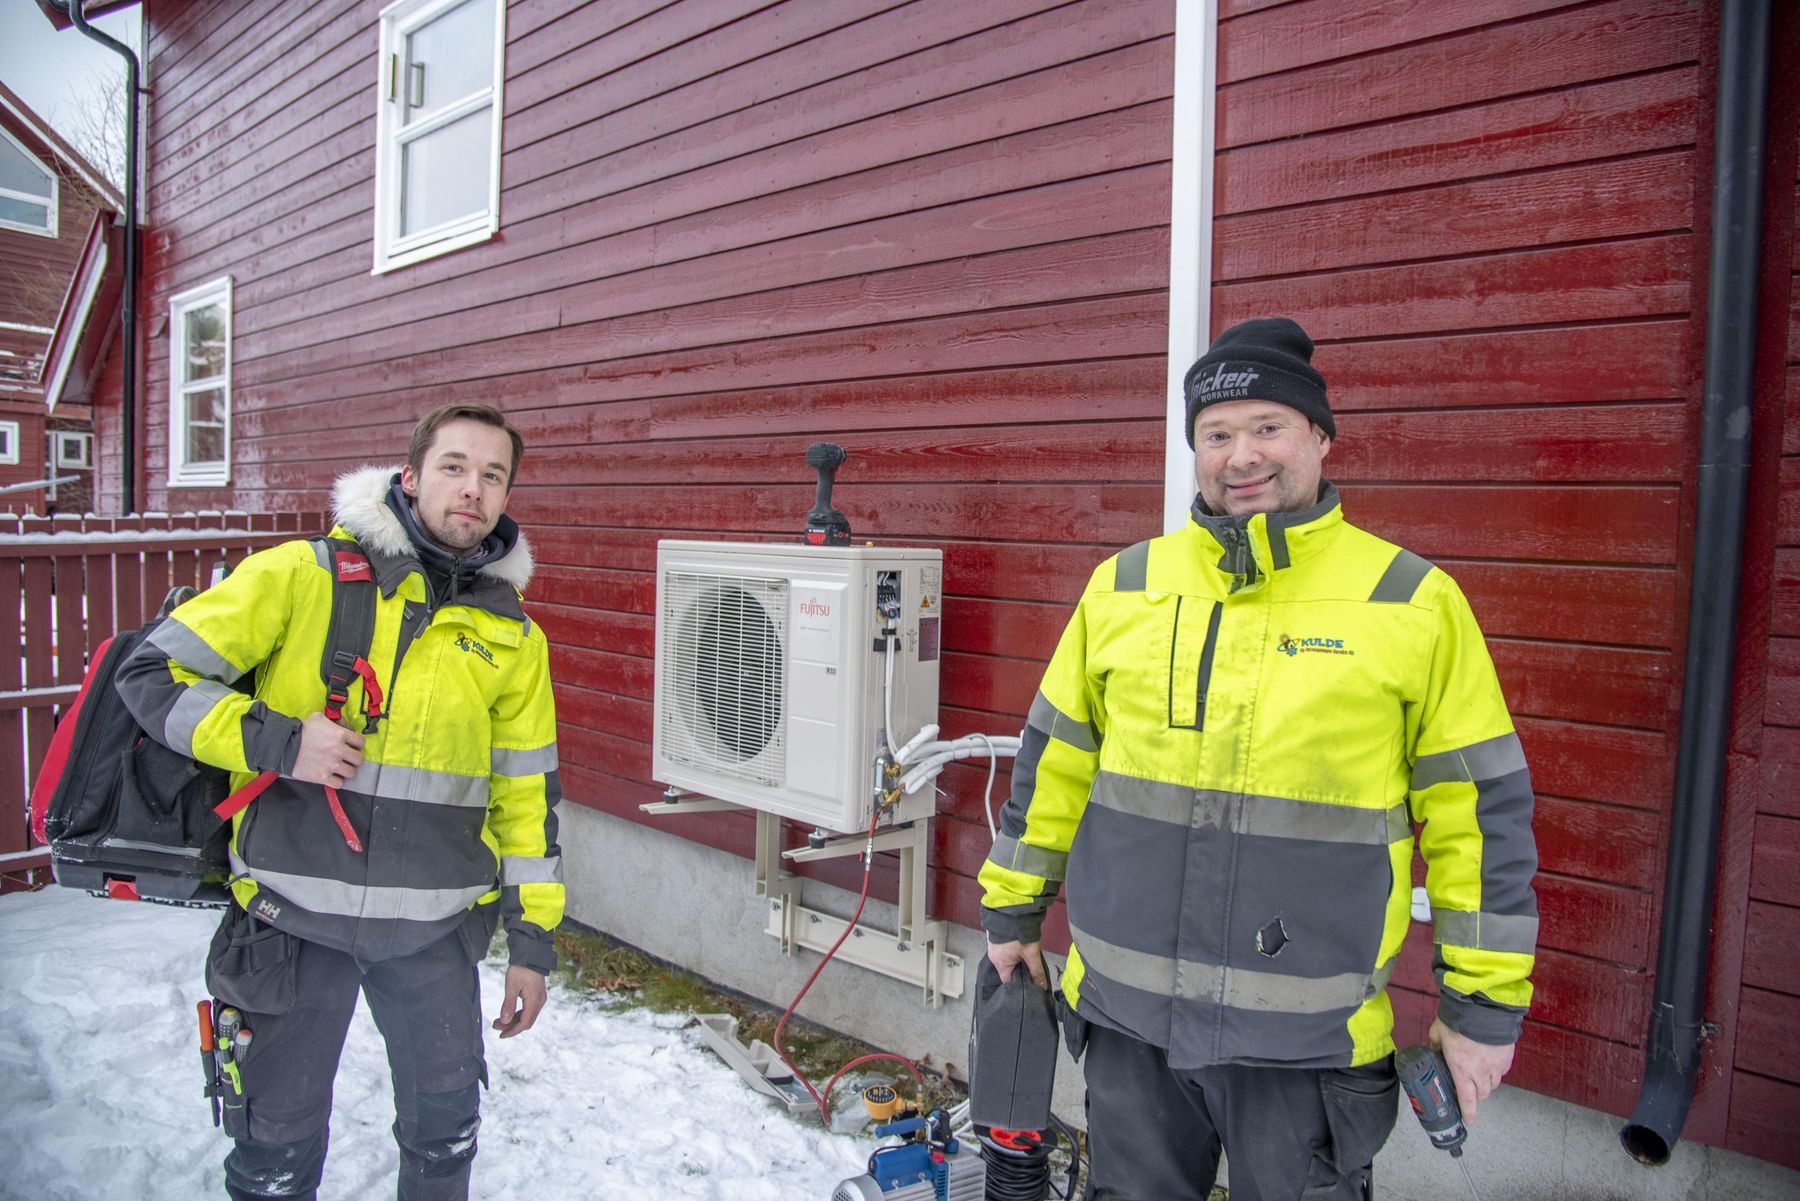 Duoen Nils Thomas Aronsen og Raymond Ratama i Kulde og Varmepumpe Service AS etter nok et vel gjennomført oppdrag for Ishavskraft.​​​​‌﻿‍﻿​‍​‍‌‍﻿﻿‌﻿​‍‌‍‍‌‌‍‌﻿‌‍‍‌‌‍﻿‍​‍​‍​﻿‍‍​‍​‍‌﻿​﻿‌‍​‌‌‍﻿‍‌‍‍‌‌﻿‌​‌﻿‍‌​‍﻿‍‌‍‍‌‌‍﻿﻿​‍​‍​‍﻿​​‍​‍‌‍‍​‌﻿​‍‌‍‌‌‌‍‌‍​‍​‍​﻿‍‍​‍​‍‌‍‍​‌﻿‌​‌﻿‌​‌﻿​​‌﻿​﻿​﻿‍‍​‍﻿﻿​‍﻿﻿‌‍‍‌‌﻿​﻿‌‍‍​‌‍​‌‌﻿‌‍‌﻿​﻿‌‍‍﻿‌﻿​‍‌‍​‌‌‍‌‍‌﻿‌​​‍﻿‍‌﻿​﻿‌‍​‌‌‍﻿‍‌‍‍‌‌﻿‌​‌﻿‍‌​‍﻿‍‌﻿​﻿‌﻿‌​‌﻿‌‌‌‍‌​‌‍‍‌‌‍﻿﻿​‍﻿﻿‌‍‍‌‌‍﻿‍‌﻿‌​‌‍‌‌‌‍﻿‍‌﻿‌​​‍﻿﻿‌‍‌‌‌‍‌​‌‍‍‌‌﻿‌​​‍﻿﻿‌‍﻿‌‌‍﻿﻿‌‍‌​‌‍‌‌​﻿﻿‌‌﻿​​‌﻿​‍‌‍‌‌‌﻿​﻿‌‍‌‌‌‍﻿‍‌﻿‌​‌‍​‌‌﻿‌​‌‍‍‌‌‍﻿﻿‌‍﻿‍​﻿‍﻿‌‍‍‌‌‍‌​​﻿﻿‌‌‍‌‌​﻿‌‍‌‍‌​​﻿​﻿‌‍​‌‌‍​﻿​﻿​‍‌‍​﻿​‍﻿‌‌‍​‌​﻿‌‌​﻿‌‌​﻿‌​​‍﻿‌​﻿‌​‌‍​‍‌‍​﻿​﻿‌‍​‍﻿‌​﻿‍‌​﻿​‌‌‍​﻿​﻿​‍​‍﻿‌​﻿‌​‌‍‌‌‌‍‌‌‌‍​﻿‌‍‌‌‌‍‌​‌‍​‌​﻿‌‍​﻿‌‍‌‍‌‍‌‍‌​‌‍‌​​﻿‍﻿‌﻿‌​‌﻿‍‌‌﻿​​‌‍‌‌​﻿﻿‌‌‍​‌‌﻿​‍‌﻿‌​‌‍‍‌‌‍​﻿‌‍﻿​‌‍‌‌​﻿‍﻿‌﻿​​‌‍​‌‌﻿‌​‌‍‍​​﻿﻿‌‌‍​﻿‌‍﻿﻿‌‍﻿‍‌﻿‌​‌‍‌‌‌‍﻿‍‌﻿‌​​‍‌‌​﻿‌‌‌​​‍‌‌﻿﻿‌‍‍﻿‌‍‌‌‌﻿‍‌​‍‌‌​﻿​﻿‌​‌​​‍‌‌​﻿​﻿‌​‌​​‍‌‌​﻿​‍​﻿​‍‌‍‌​​﻿​‌​﻿‍​‌‍​‌​﻿‌‌​﻿​​​﻿‌‍​﻿​​​﻿‍​‌‍‌‍‌‍‌​​﻿​‍​‍‌‌​﻿​‍​﻿​‍​‍‌‌​﻿‌‌‌​‌​​‍﻿‍‌‍​‌‌‍﻿​‌﻿‌​​﻿﻿﻿‌‍​‍‌‍​‌‌﻿​﻿‌‍‌‌‌‌‌‌‌﻿​‍‌‍﻿​​﻿﻿‌‌‍‍​‌﻿‌​‌﻿‌​‌﻿​​‌﻿​﻿​‍‌‌​﻿​﻿‌​​‌​‍‌‌​﻿​‍‌​‌‍​‍‌‌​﻿​‍‌​‌‍‌‍‍‌‌﻿​﻿‌‍‍​‌‍​‌‌﻿‌‍‌﻿​﻿‌‍‍﻿‌﻿​‍‌‍​‌‌‍‌‍‌﻿‌​​‍﻿‍‌﻿​﻿‌‍​‌‌‍﻿‍‌‍‍‌‌﻿‌​‌﻿‍‌​‍﻿‍‌﻿​﻿‌﻿‌​‌﻿‌‌‌‍‌​‌‍‍‌‌‍﻿﻿​‍‌‍‌‍‍‌‌‍‌​​﻿﻿‌‌‍‌‌​﻿‌‍‌‍‌​​﻿​﻿‌‍​‌‌‍​﻿​﻿​‍‌‍​﻿​‍﻿‌‌‍​‌​﻿‌‌​﻿‌‌​﻿‌​​‍﻿‌​﻿‌​‌‍​‍‌‍​﻿​﻿‌‍​‍﻿‌​﻿‍‌​﻿​‌‌‍​﻿​﻿​‍​‍﻿‌​﻿‌​‌‍‌‌‌‍‌‌‌‍​﻿‌‍‌‌‌‍‌​‌‍​‌​﻿‌‍​﻿‌‍‌‍‌‍‌‍‌​‌‍‌​​‍‌‍‌﻿‌​‌﻿‍‌‌﻿​​‌‍‌‌​﻿﻿‌‌‍​‌‌﻿​‍‌﻿‌​‌‍‍‌‌‍​﻿‌‍﻿​‌‍‌‌​‍‌‍‌﻿​​‌‍​‌‌﻿‌​‌‍‍​​﻿﻿‌‌‍​﻿‌‍﻿﻿‌‍﻿‍‌﻿‌​‌‍‌‌‌‍﻿‍‌﻿‌​​‍‌‌​﻿‌‌‌​​‍‌‌﻿﻿‌‍‍﻿‌‍‌‌‌﻿‍‌​‍‌‌​﻿​﻿‌​‌​​‍‌‌​﻿​﻿‌​‌​​‍‌‌​﻿​‍​﻿​‍‌‍‌​​﻿​‌​﻿‍​‌‍​‌​﻿‌‌​﻿​​​﻿‌‍​﻿​​​﻿‍​‌‍‌‍‌‍‌​​﻿​‍​‍‌‌​﻿​‍​﻿​‍​‍‌‌​﻿‌‌‌​‌​​‍﻿‍‌‍​‌‌‍﻿​‌﻿‌​​‍​‍‌﻿﻿‌